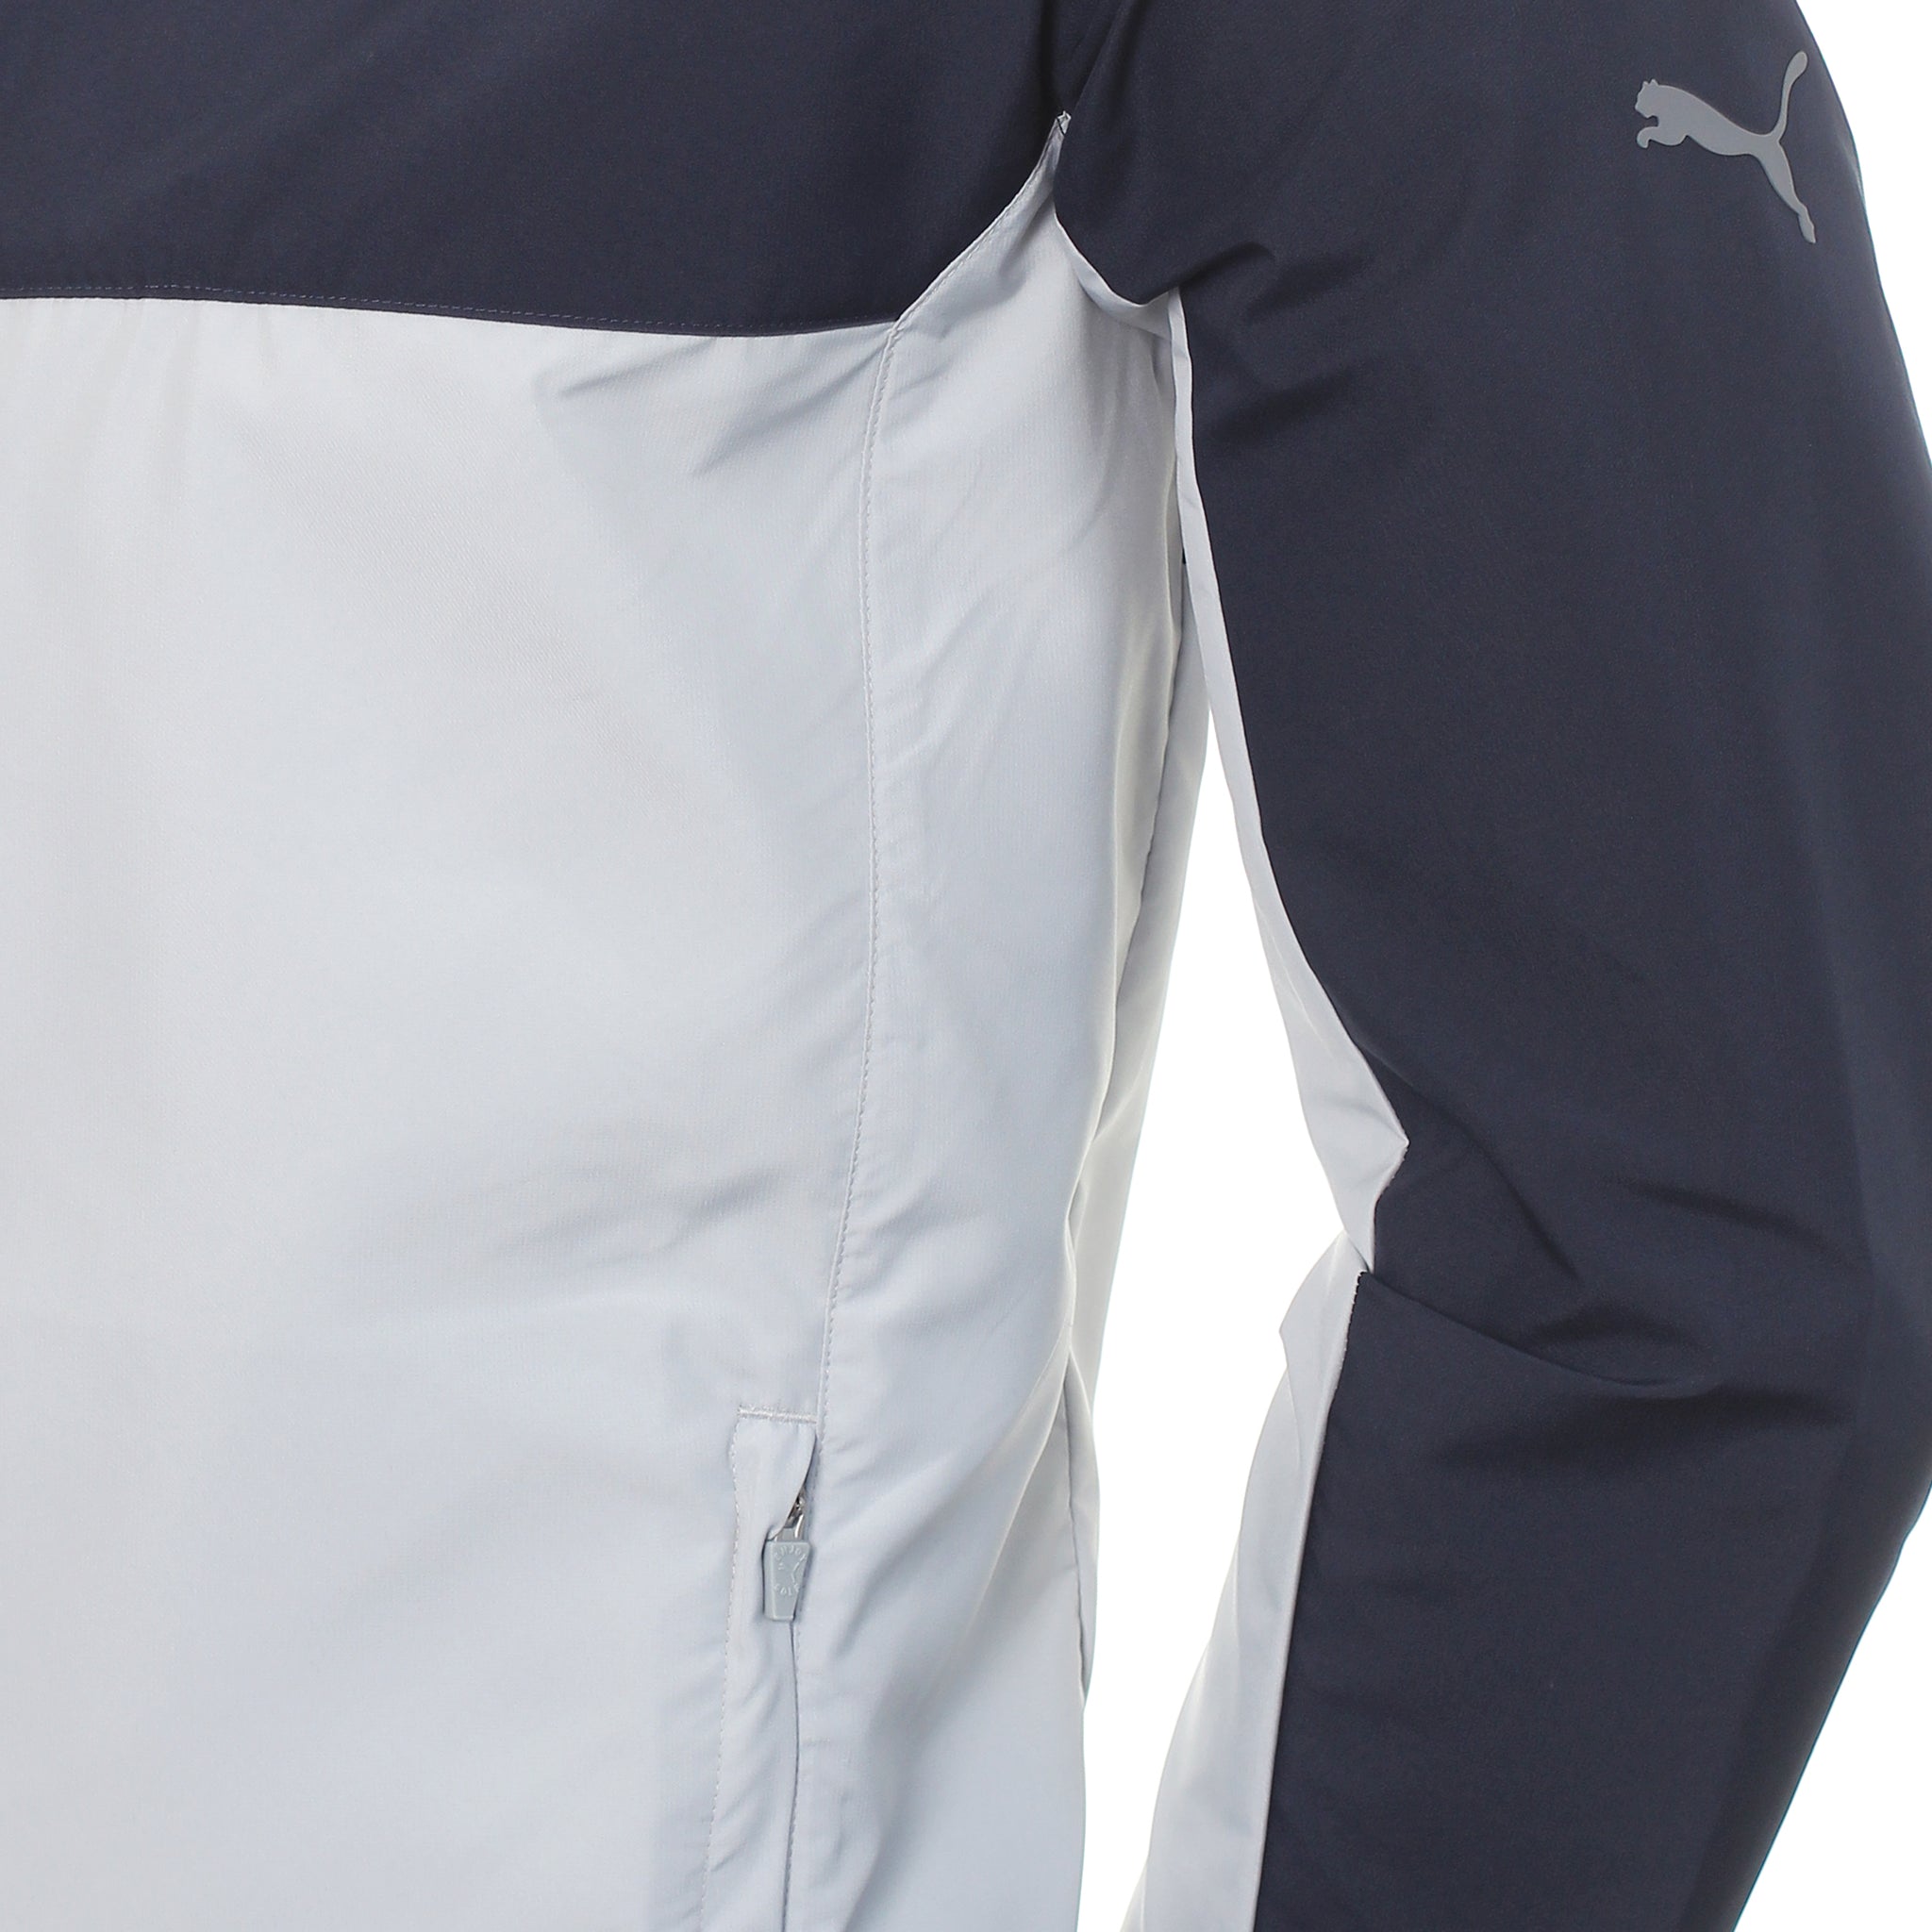 puma-golf-first-mile-wind-jacket-599128-navy-blazer-03